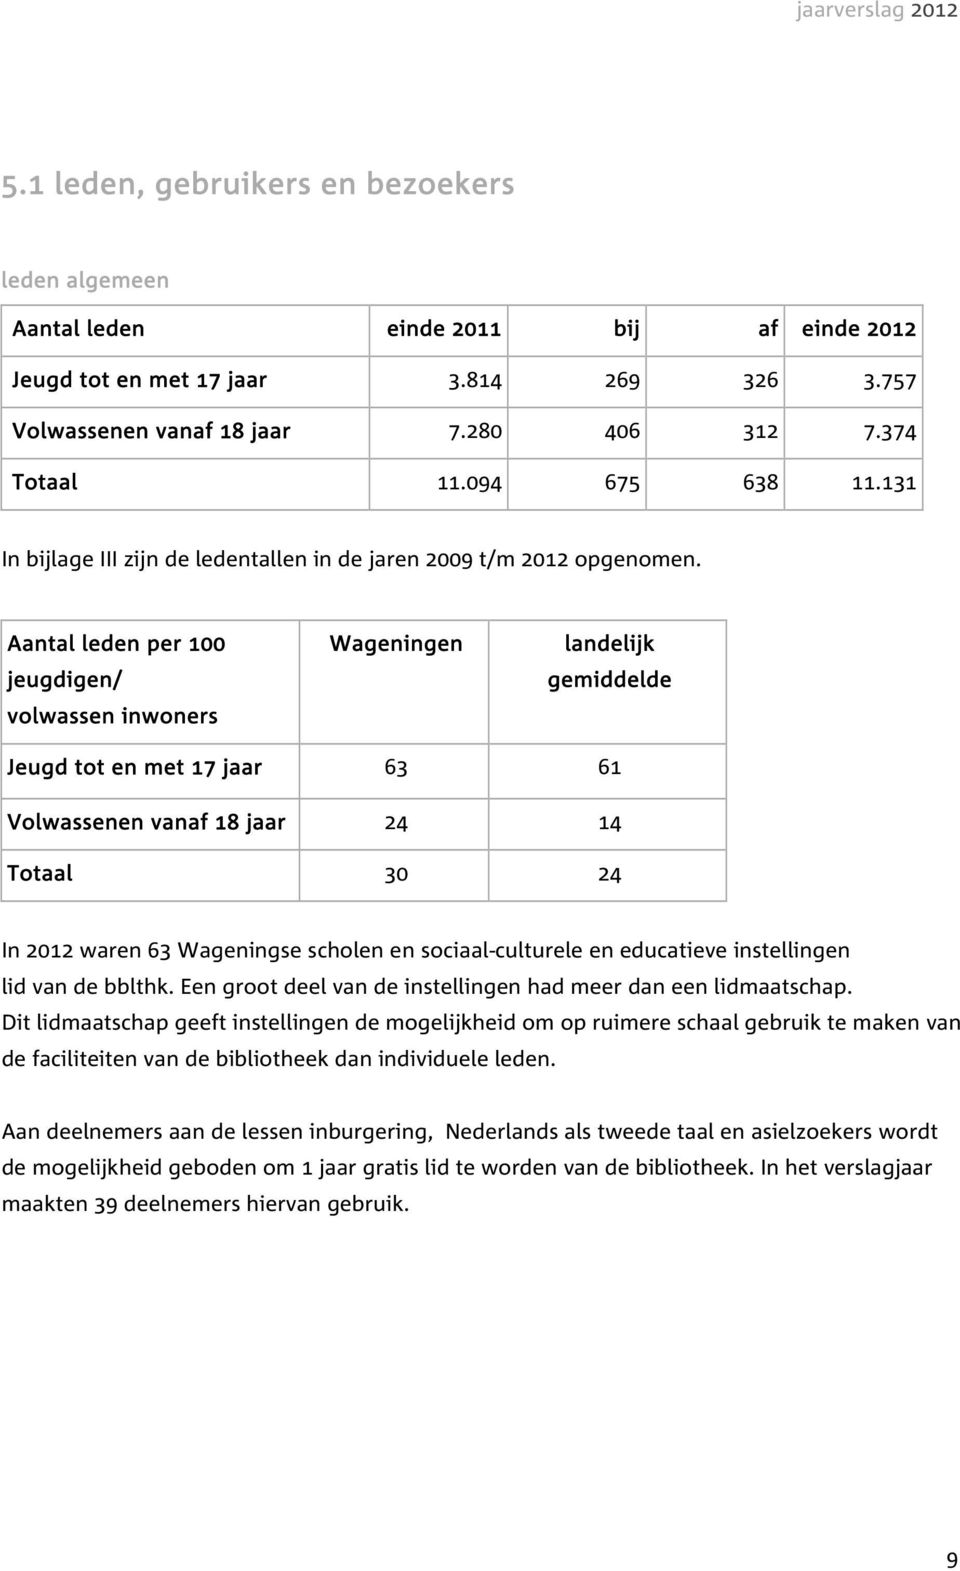 Aantal leden per 100 jeugdigen/ volwassen inwoners Wageningen landelijk gemiddelde Jeugd tot en met 17 jaar 63 61 Volwassenen vanaf 18 jaar 24 14 Totaal 30 24 In 2012 waren 63 Wageningse scholen en